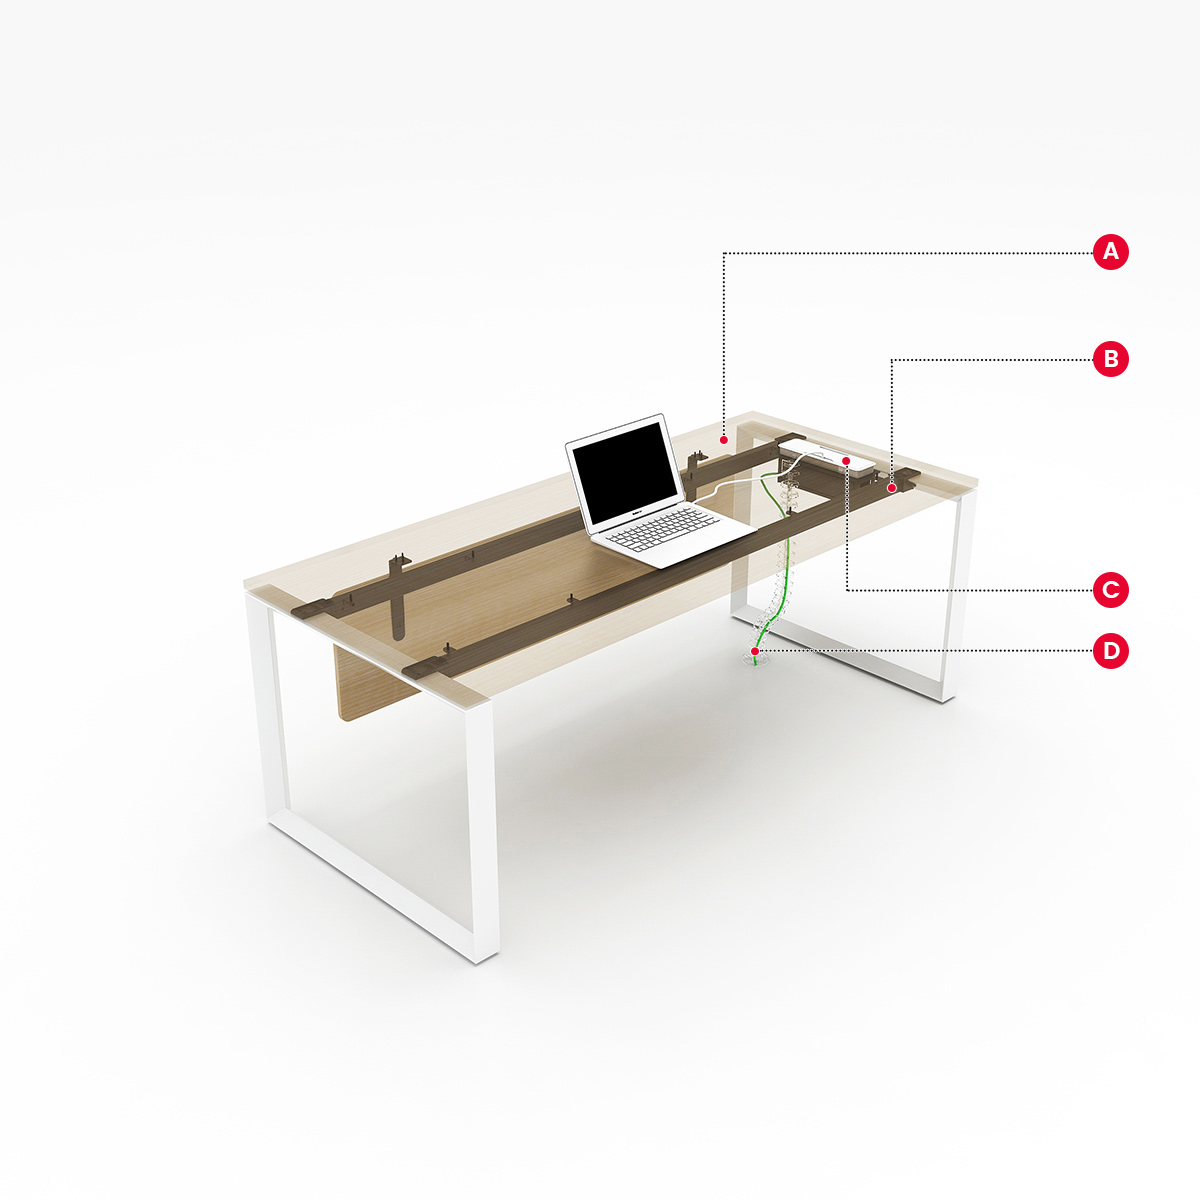 Mdf MFC office desk simple design office furniture desk hot sale